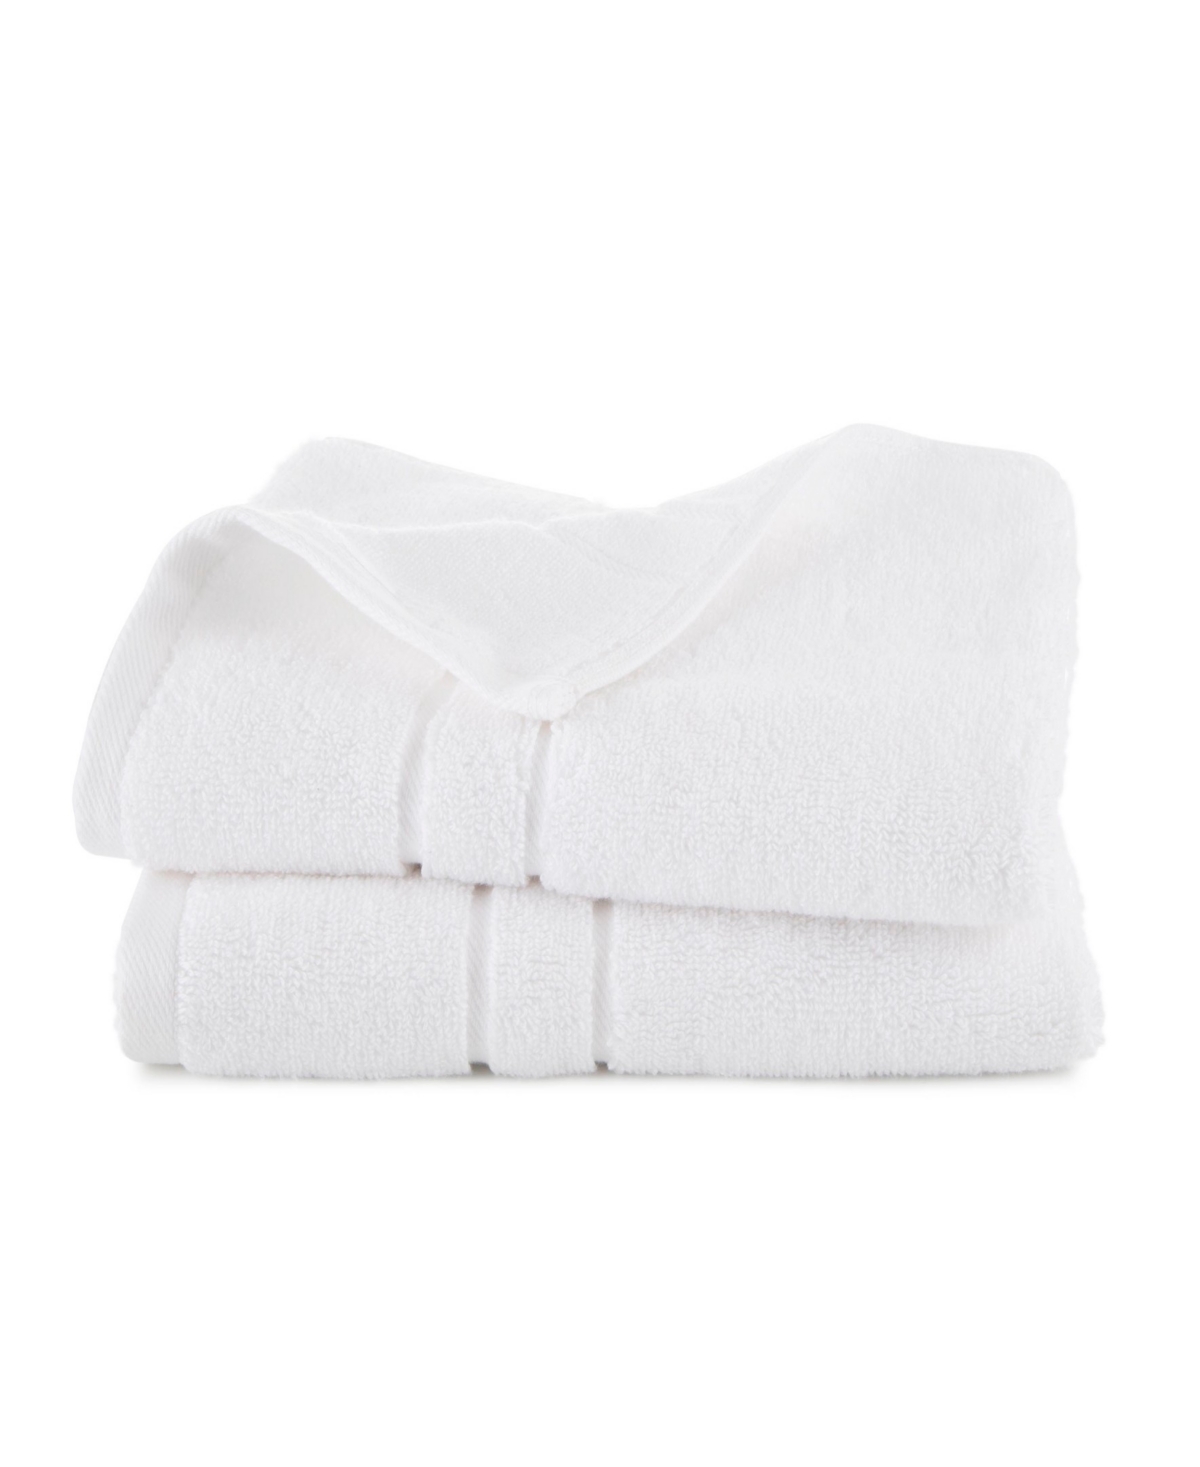 Clean Design Home X Martex Allergen-resistant Savoy 2 Pack Hand Towel Set In White